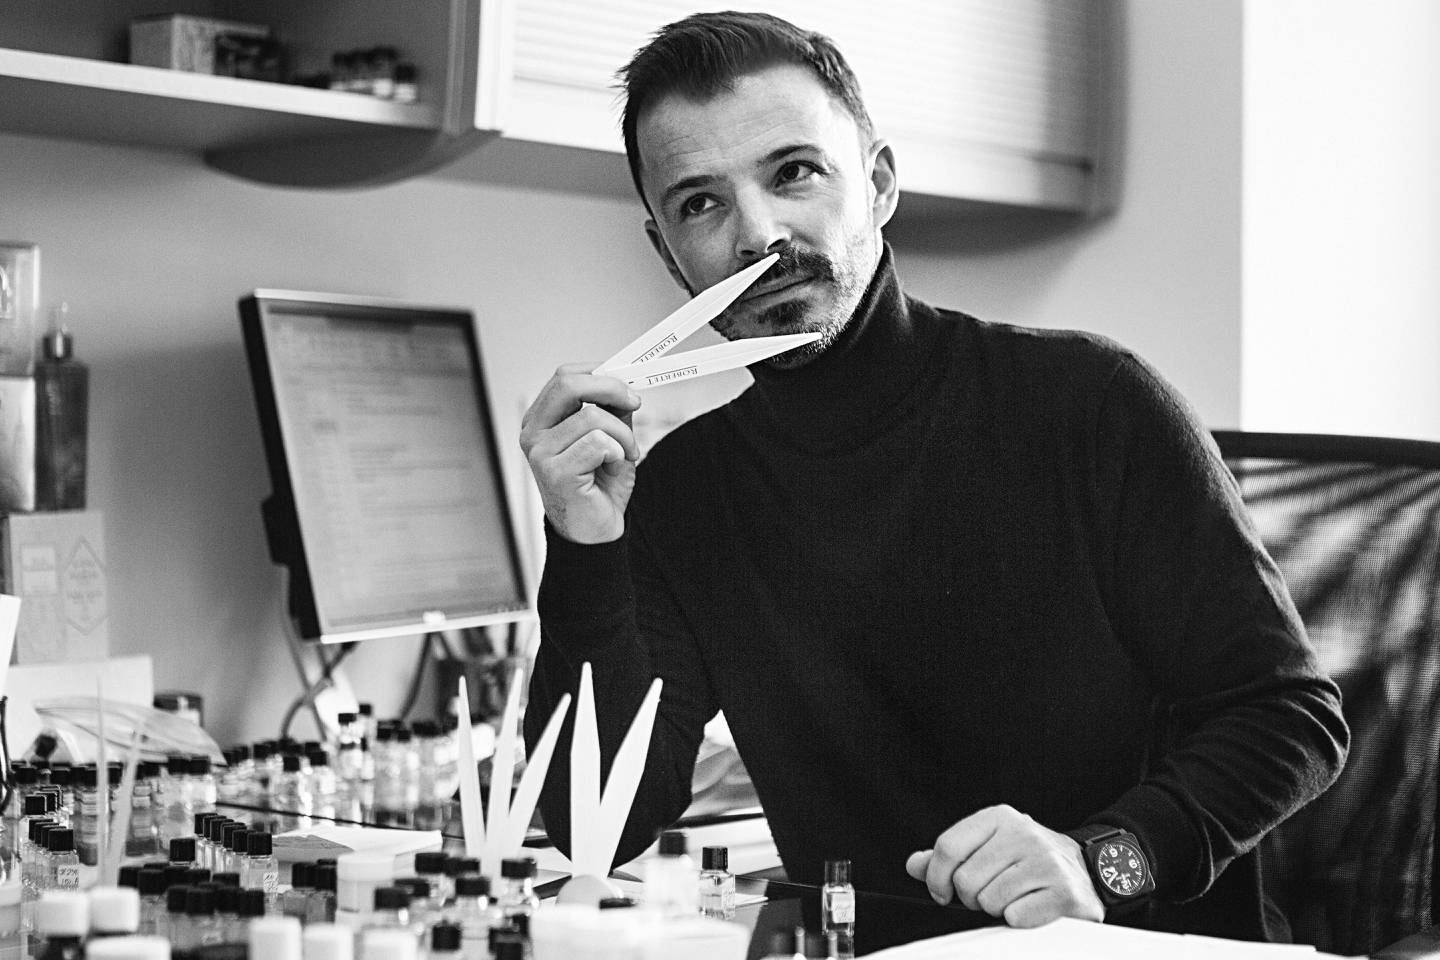 Jérôme Epinette, vice president of fine fragrance at Robertet